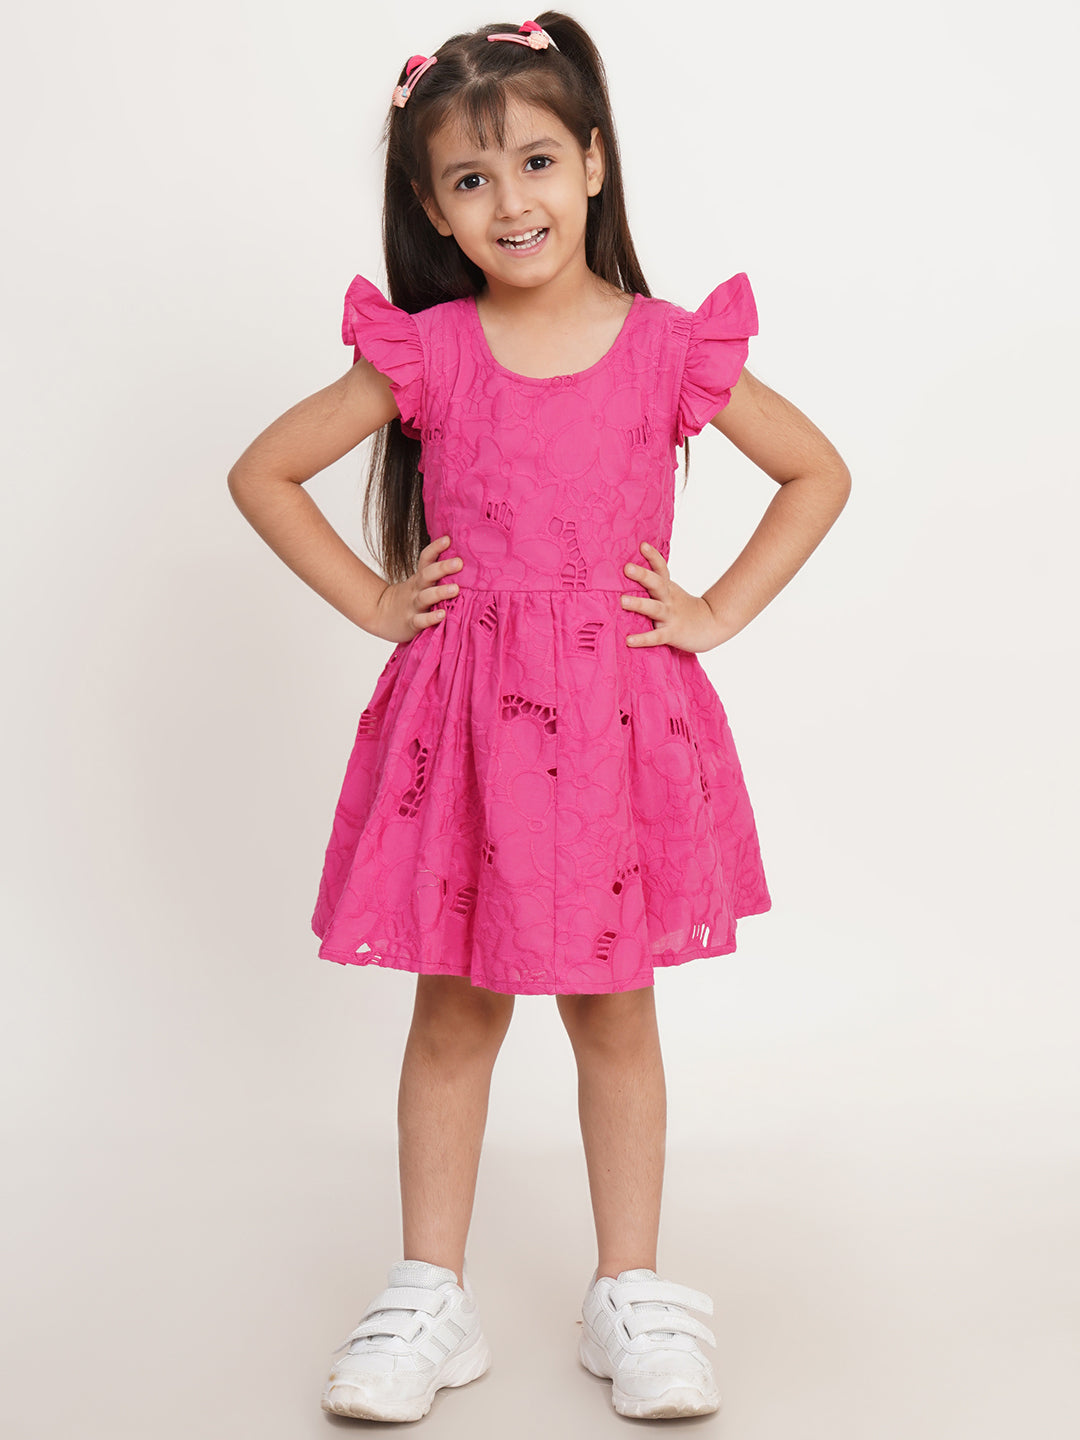 CREATIVE KID'S Girl Pink Cotton Schiffli Fit & Flare Dress